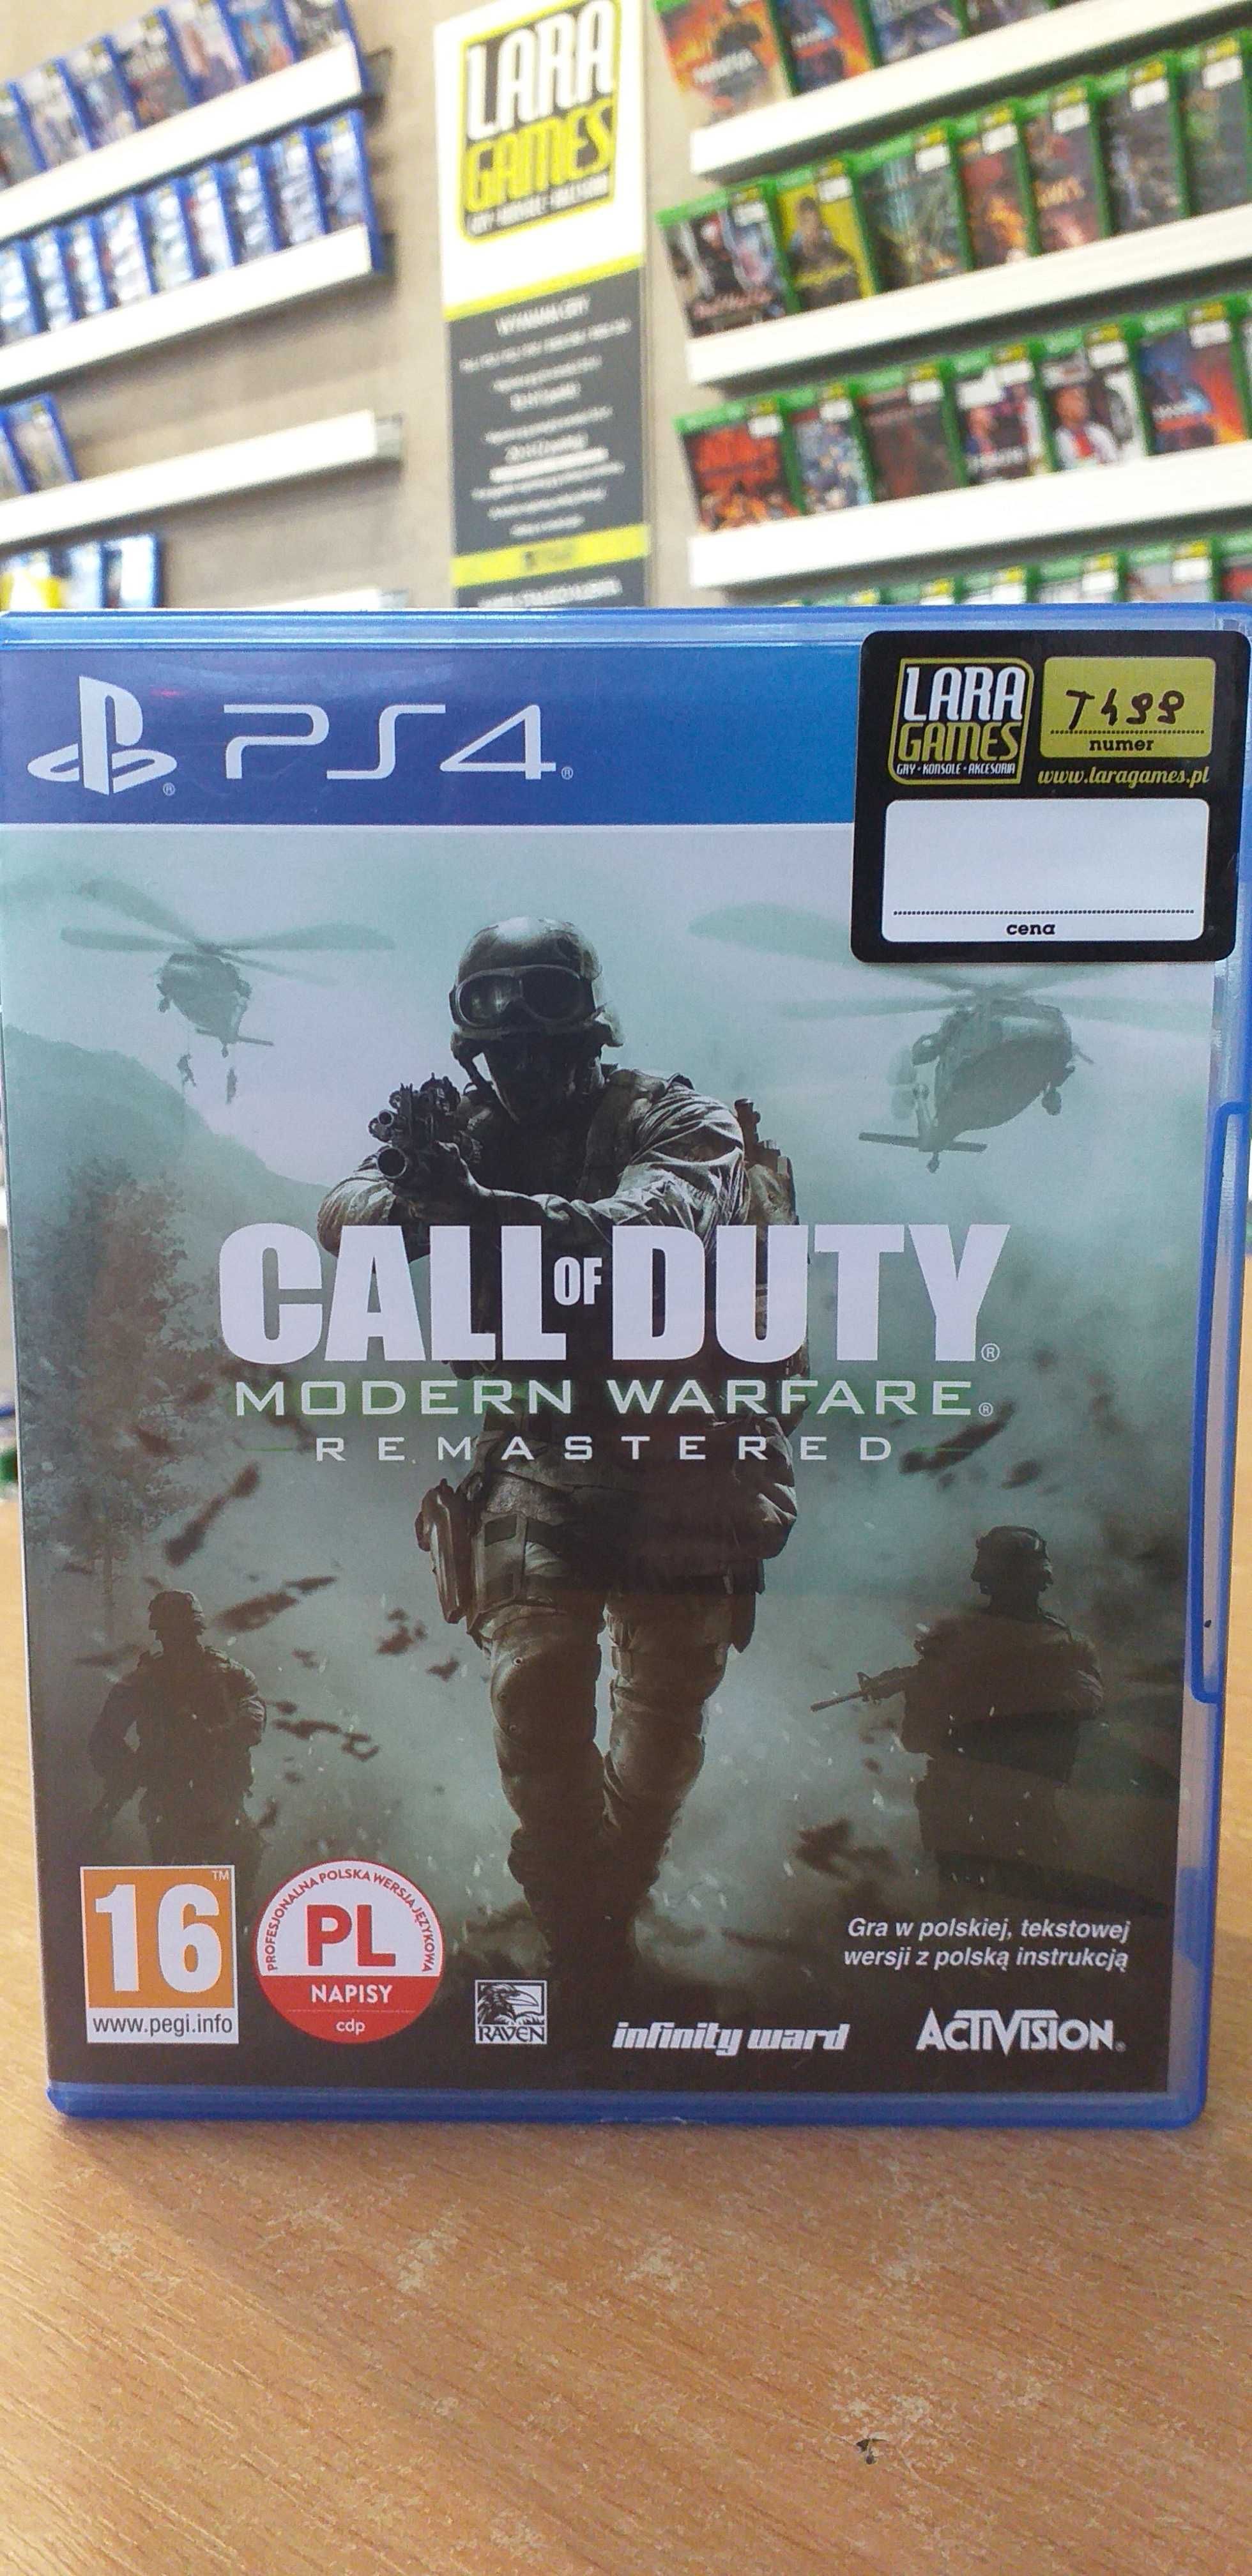 Call of Duty Modern Warfare Remastered PS4 Sprzedaż/Wymiana Lara Games